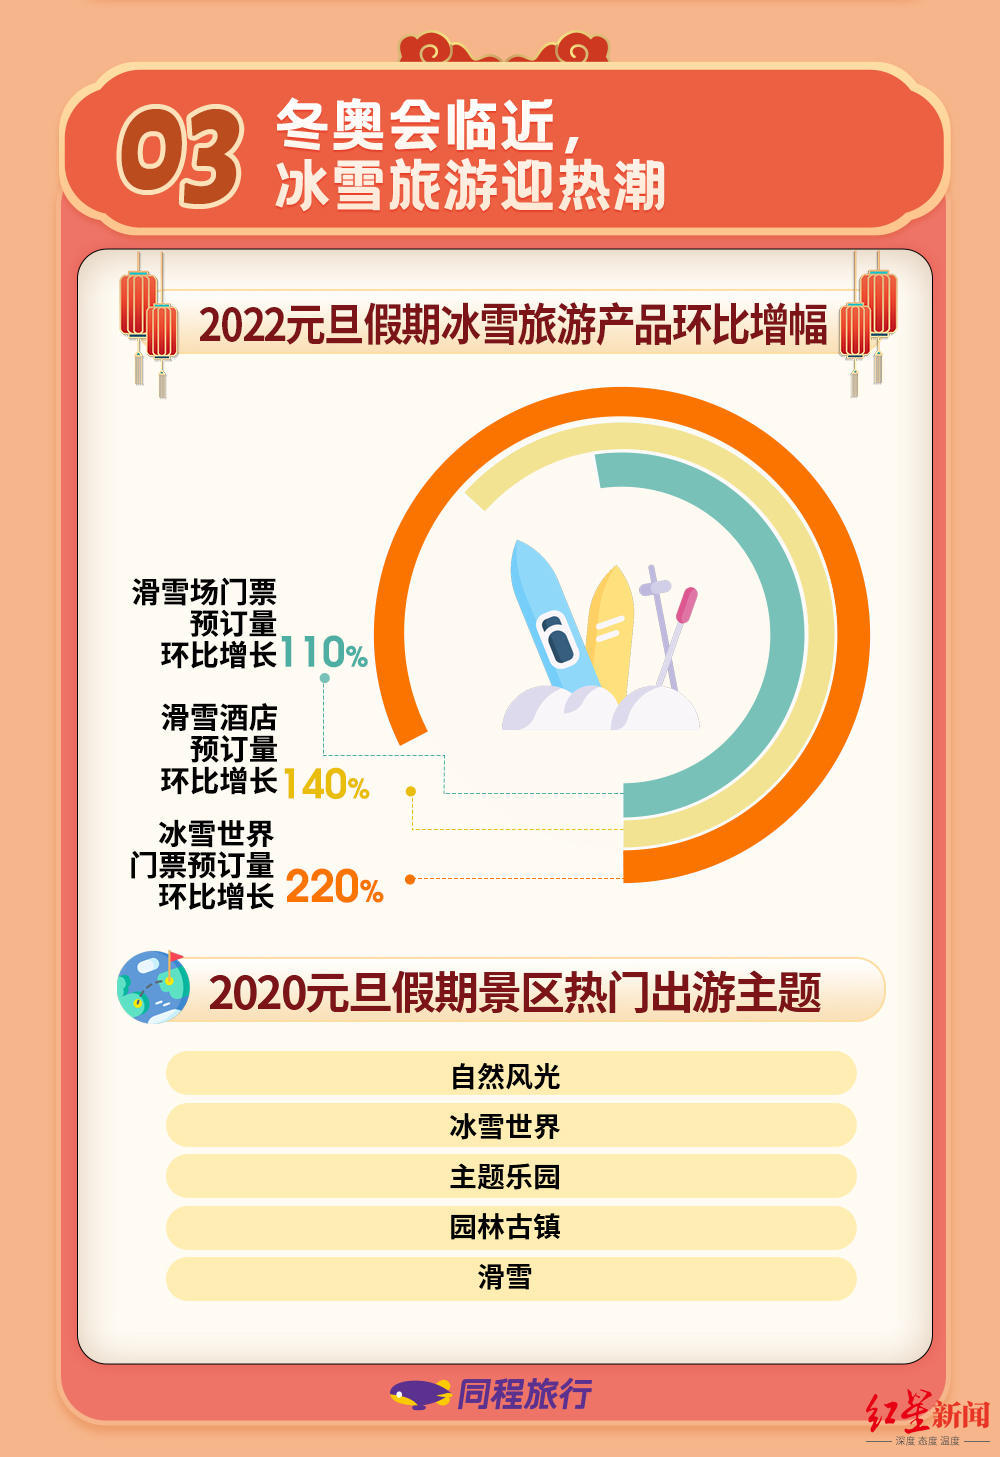 2022年首个小长假，跨年当天午夜用车订单翻10倍，广东、四川、海南旅行热度高